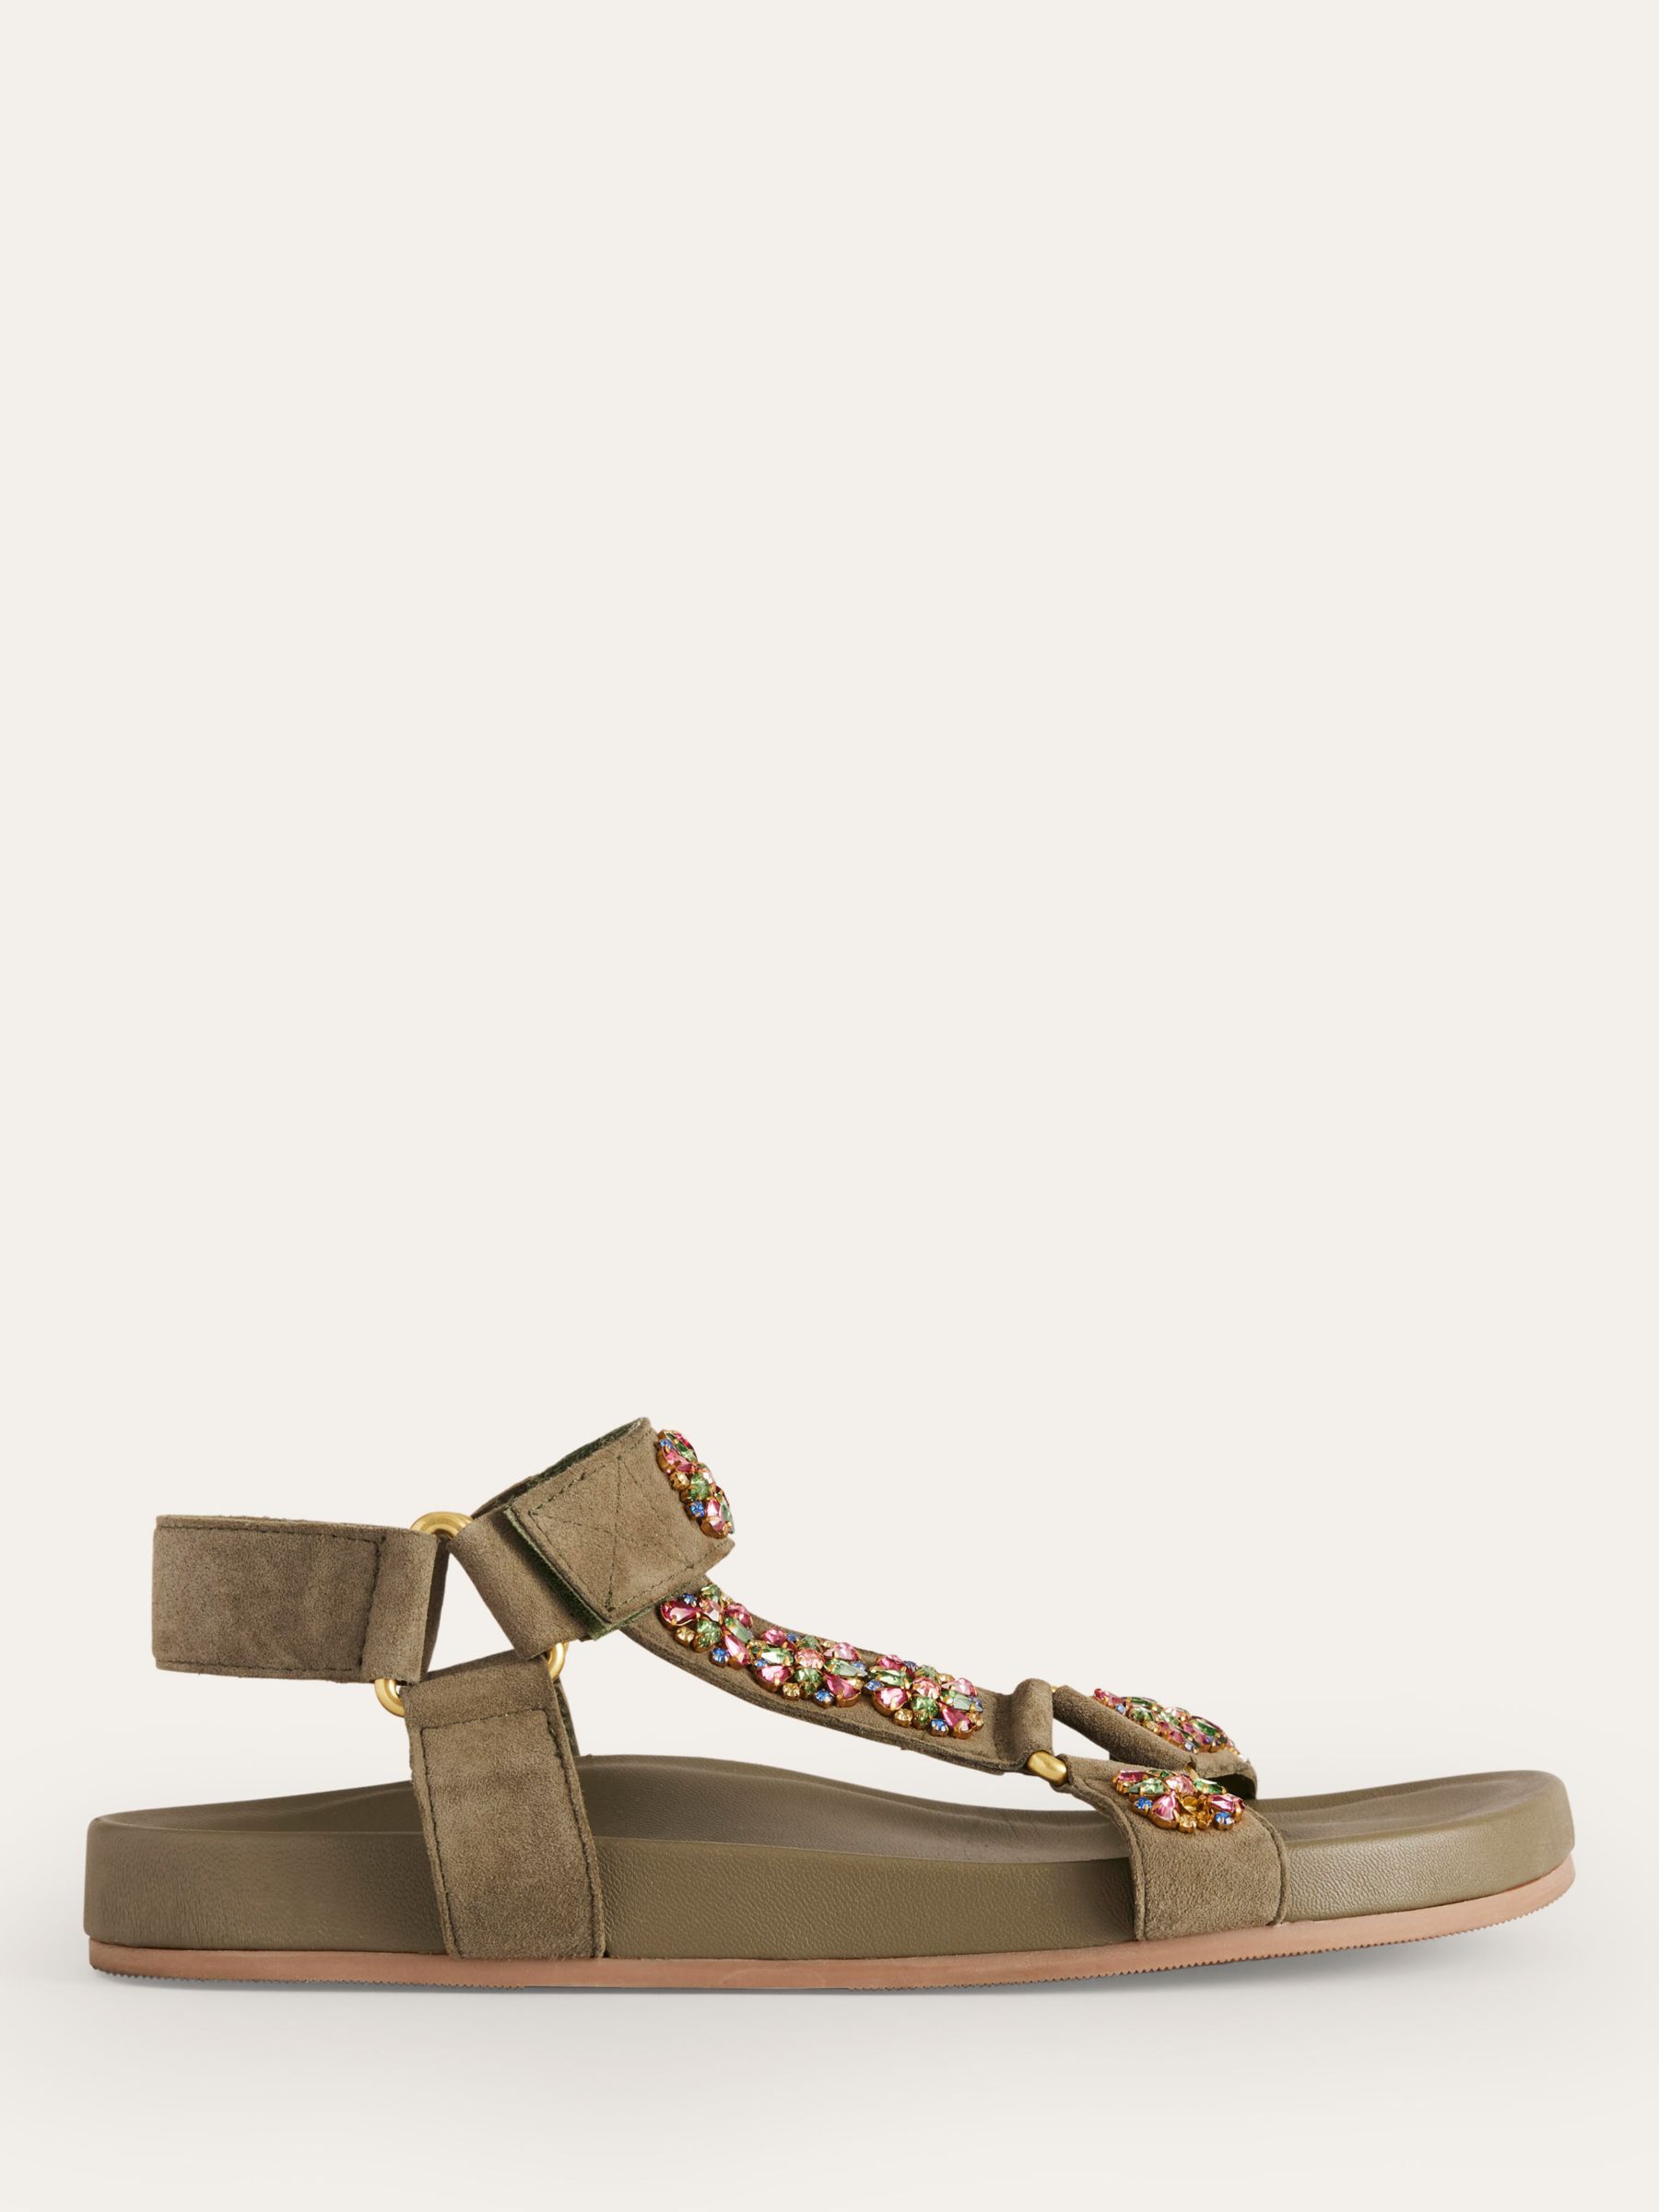 Boden Embellished Suede Trek Style Sandals, Deep Olive, 4